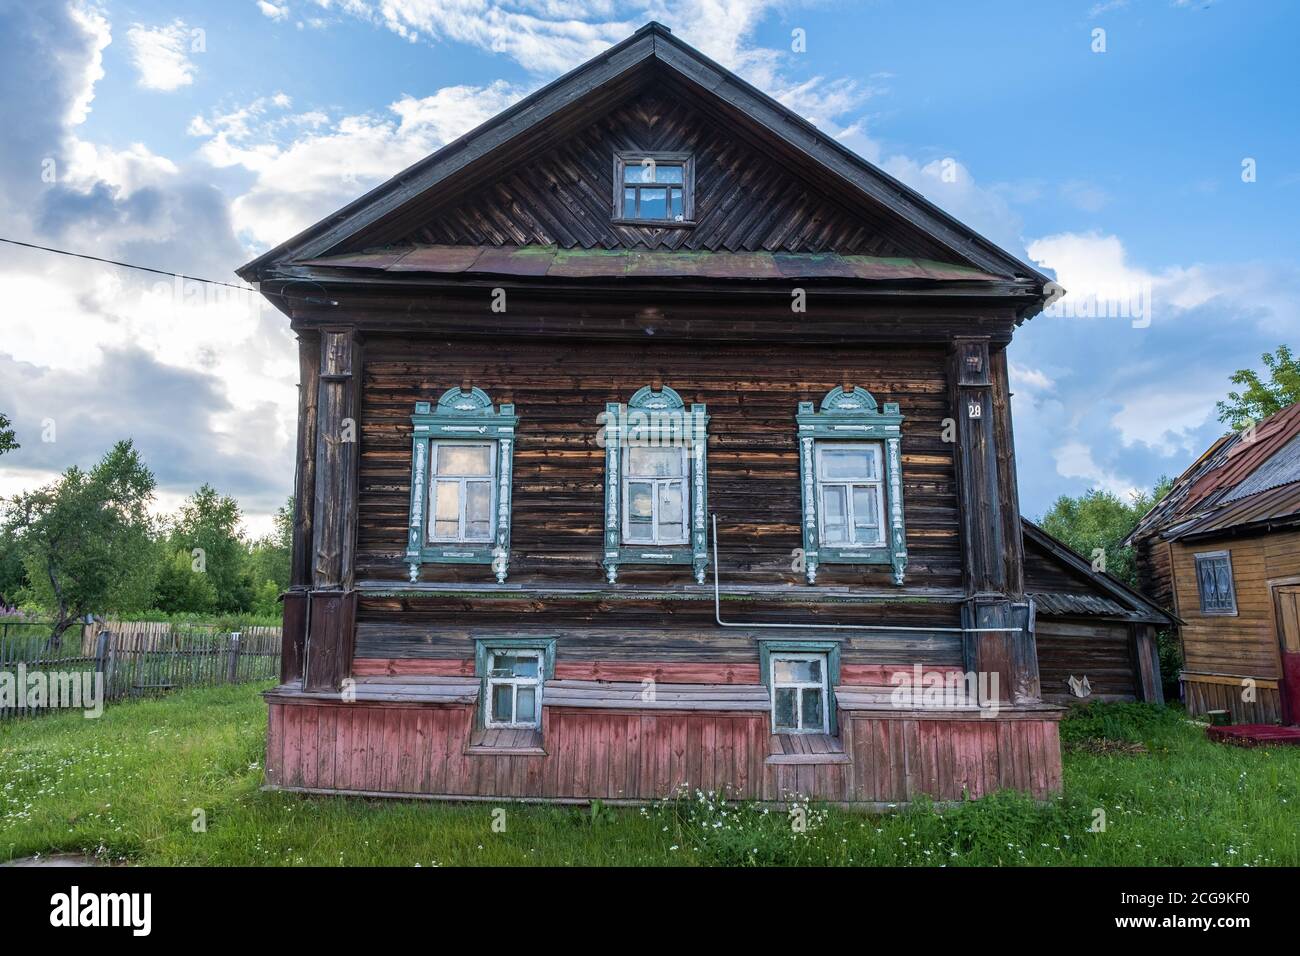 Vecchia casa di villaggio a due piani in legno in una serata estiva, Krasnye Gory villaggio, Ivanovo regione, Russia. Foto Stock